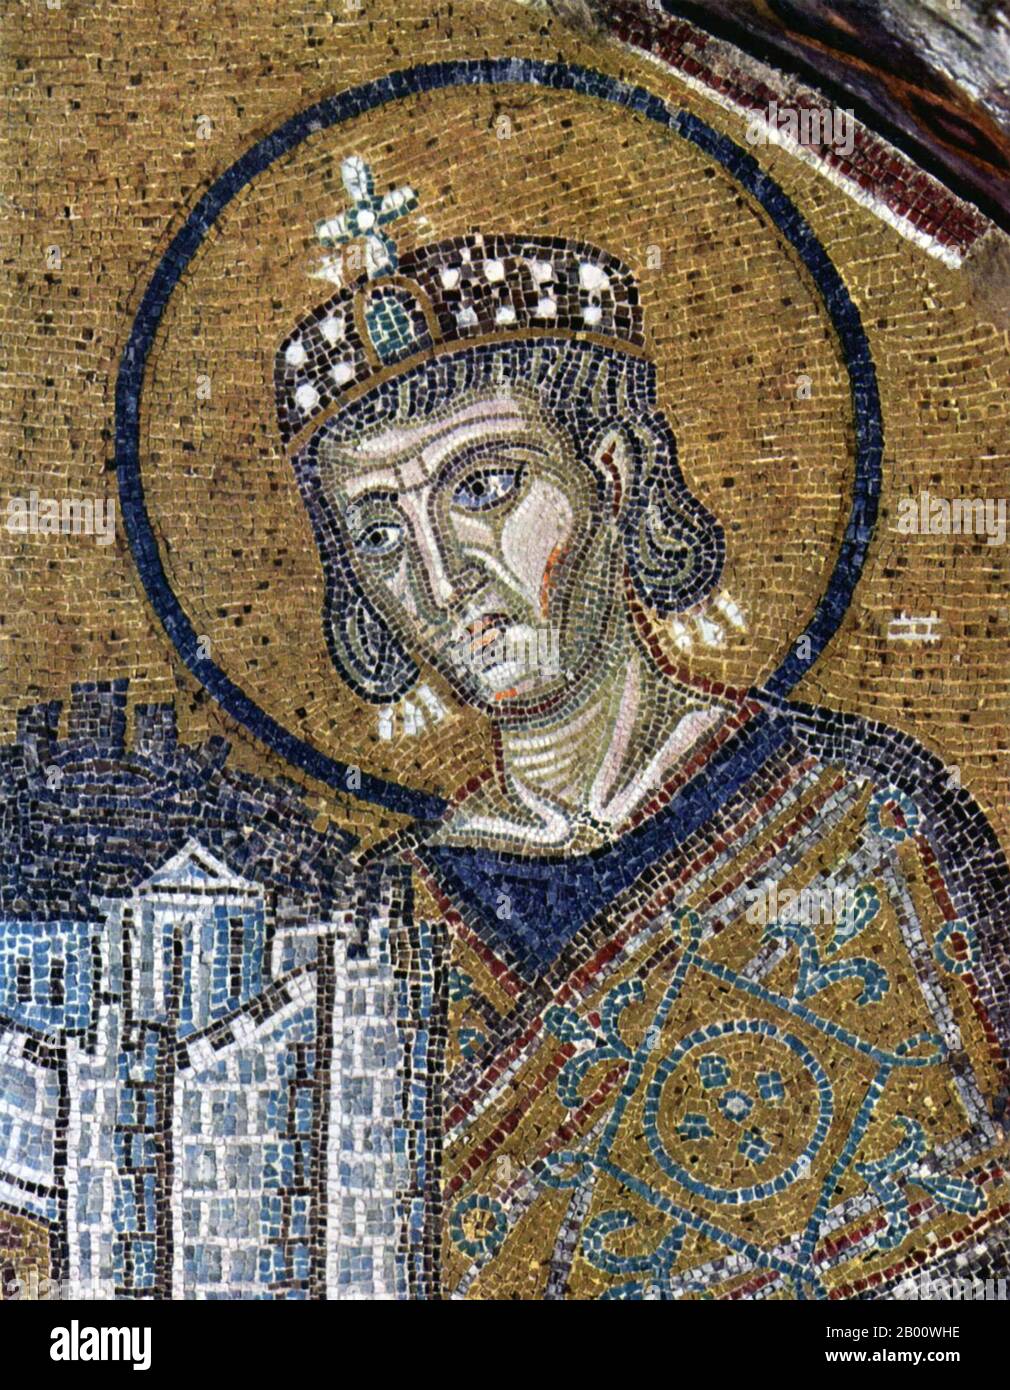 Türkei: Kaiser Konstantin I. mit einem Modell der Stadt Byzanz. Detail eines Mosaiks in der Hagia Sophia, c. 1000 CE. Stockfoto